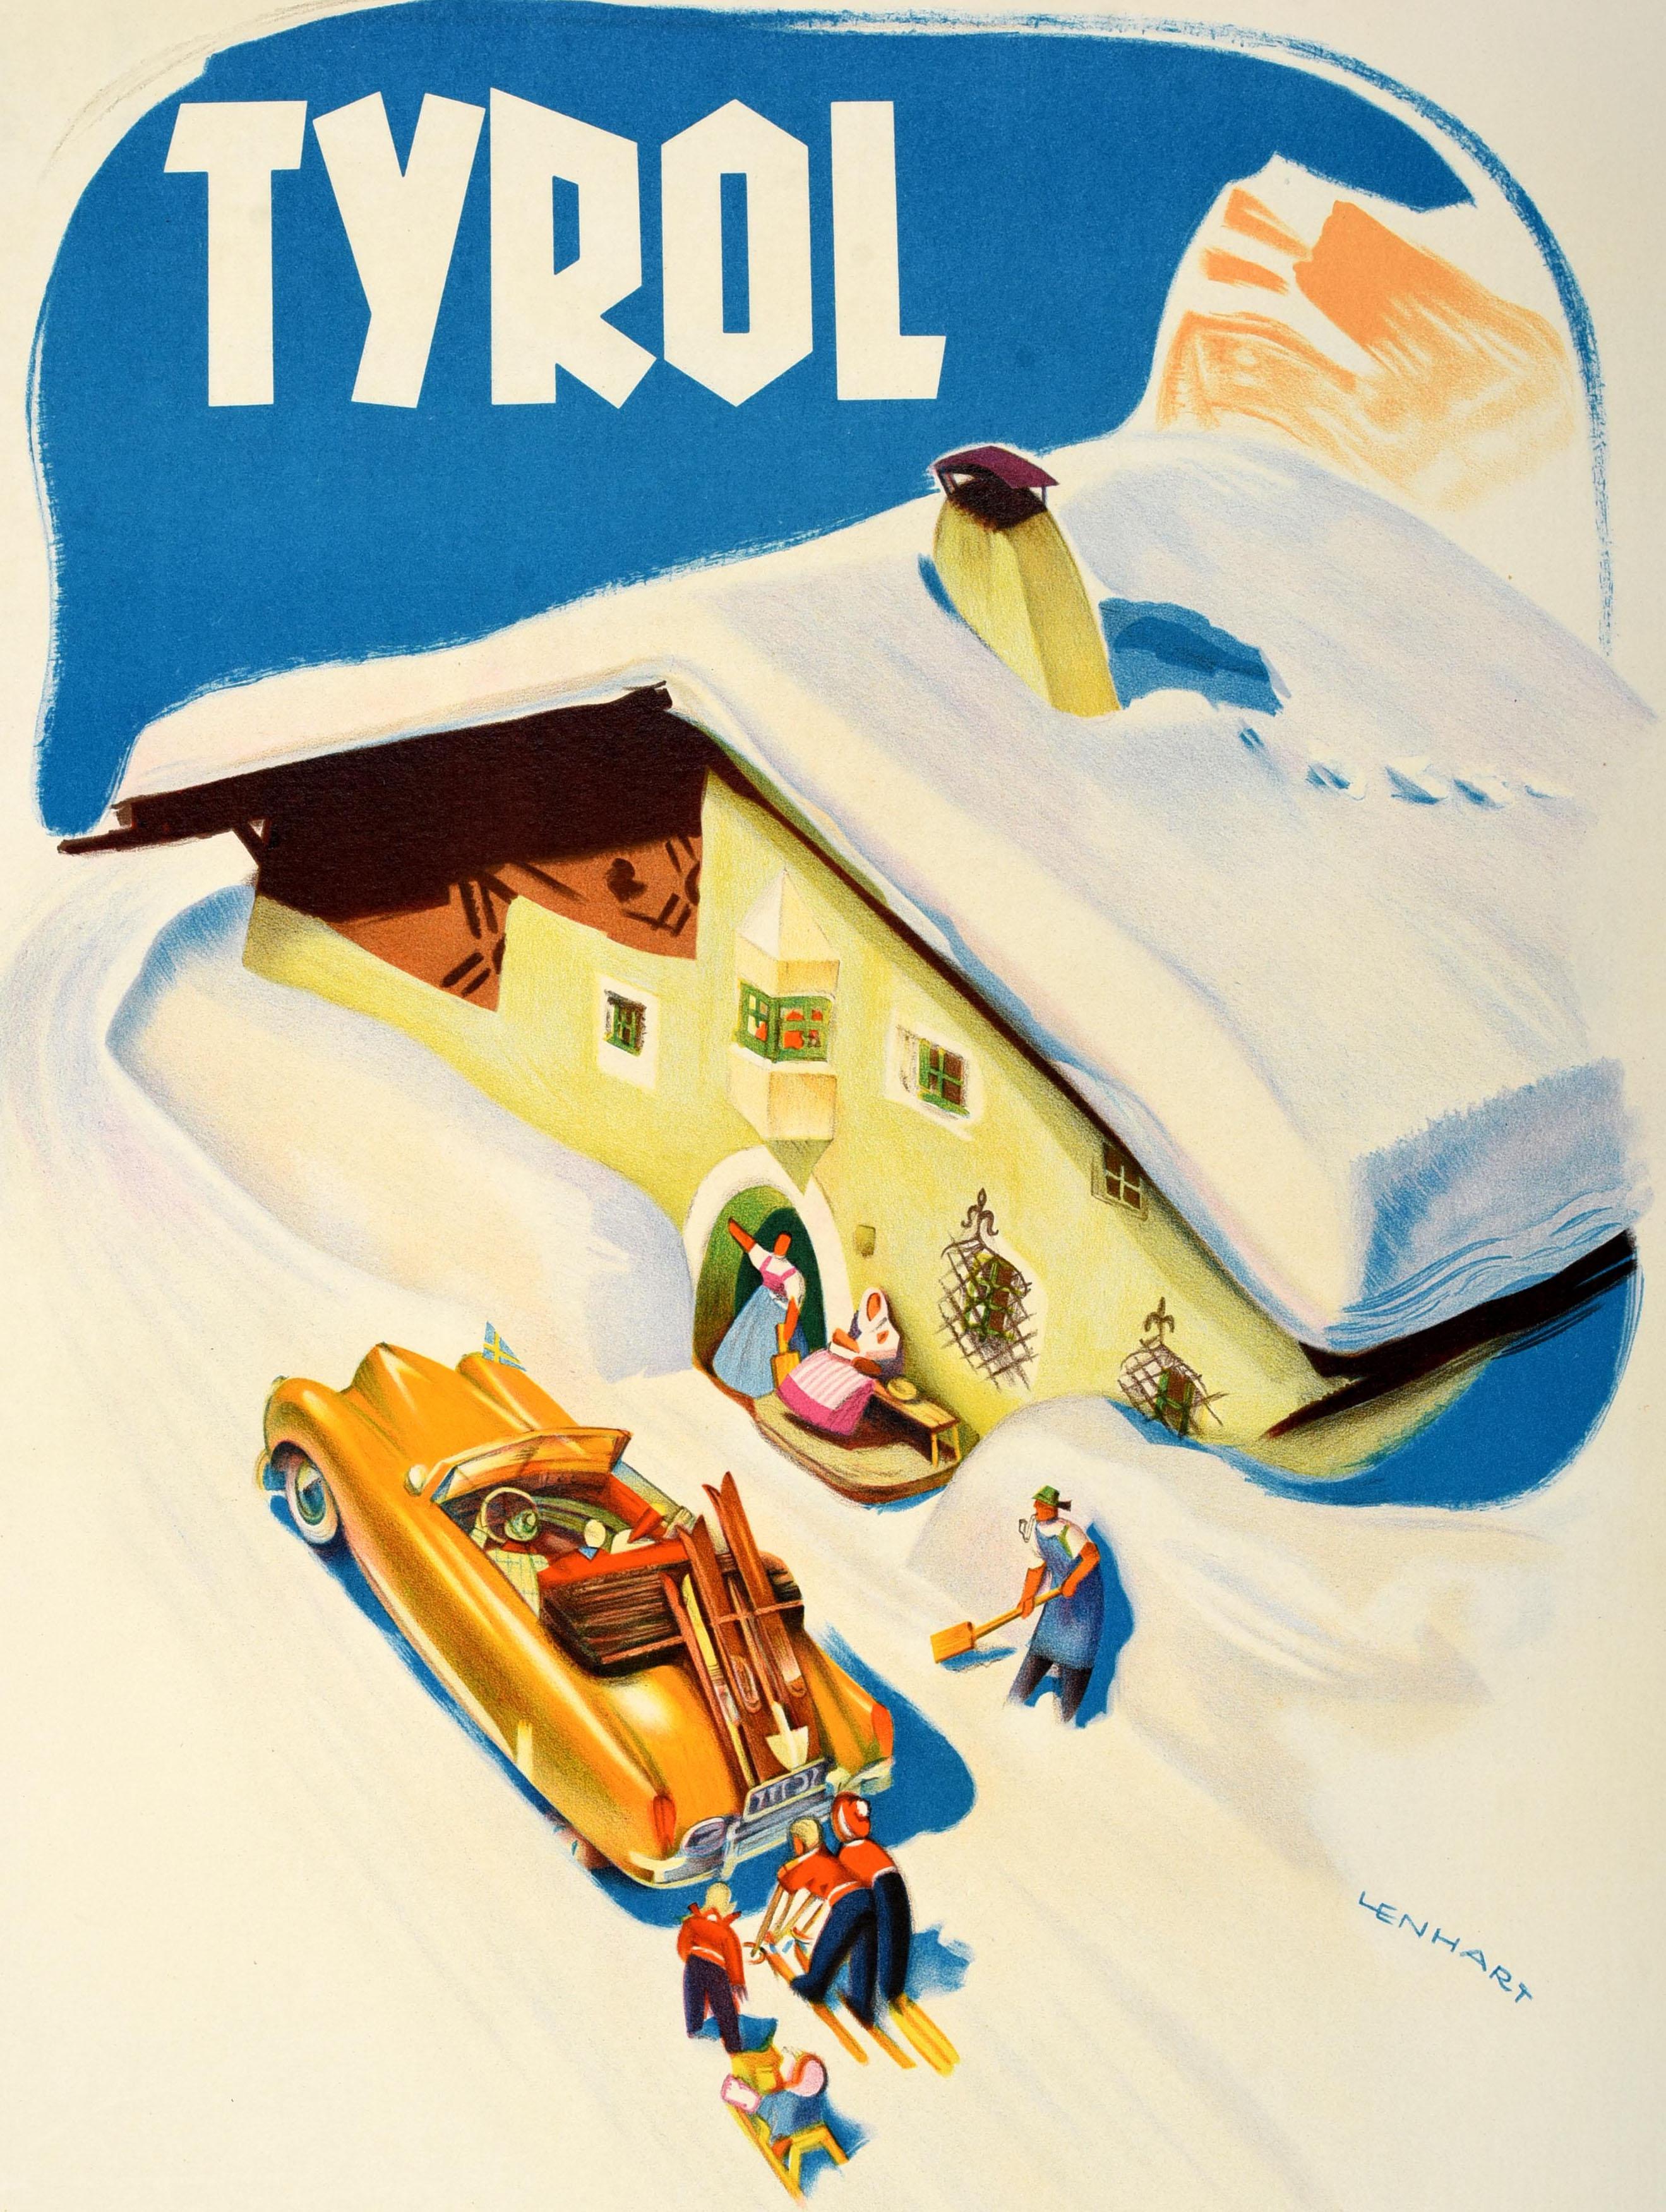 Original-Winterreiseplakat für Tirol mit einem lustigen Kunstwerk von Franz Lenhart (1898-1992), das ein Paar in einem schicken goldgelben Auto mit einer schwedischen gelb-blauen Flagge auf der Vorderseite zeigt, das vor einer verschneiten Hütte